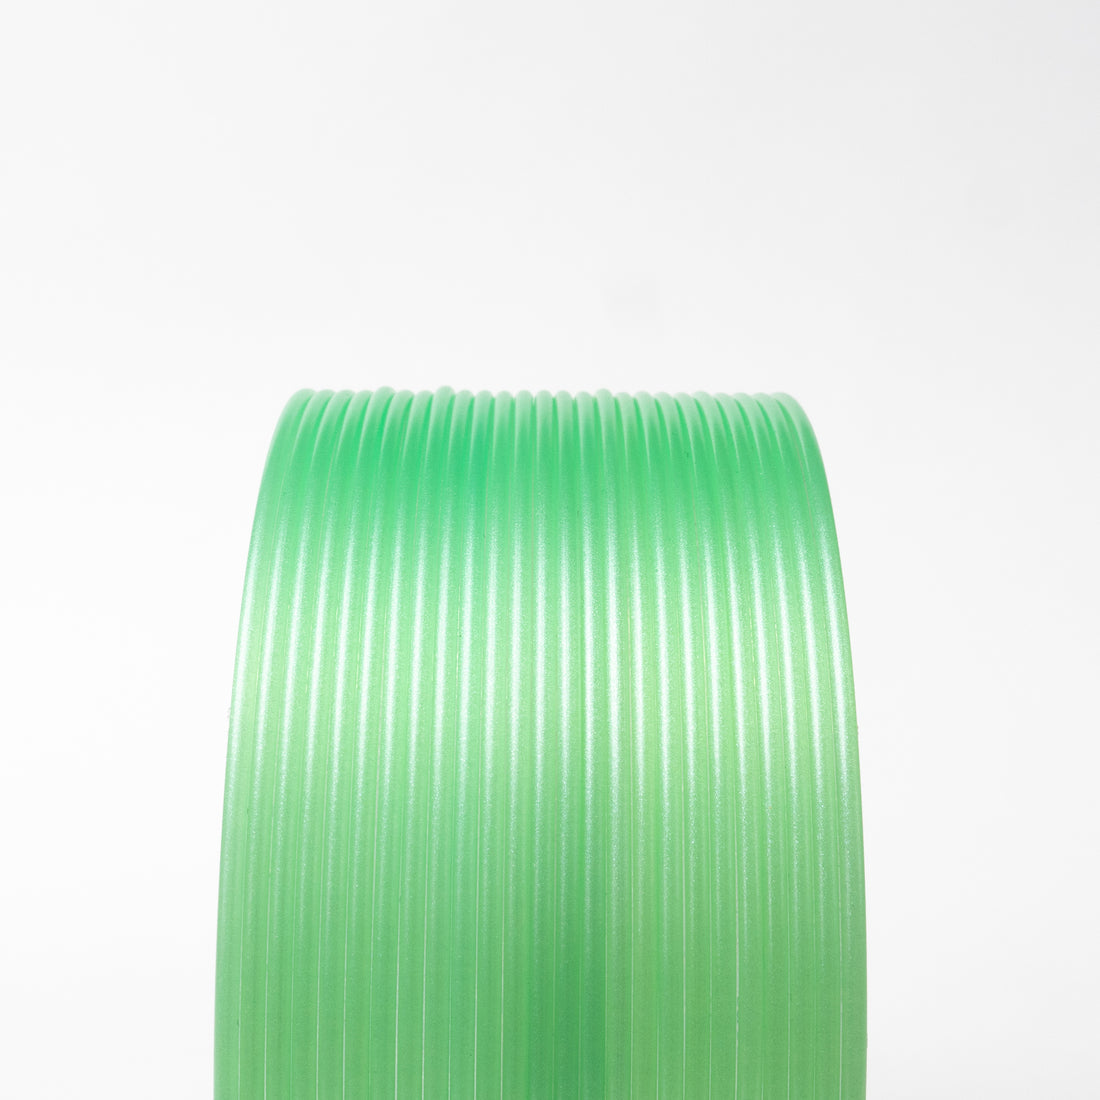 Protopasta HTPLA - 1.75mm (500g) - Summertime Green